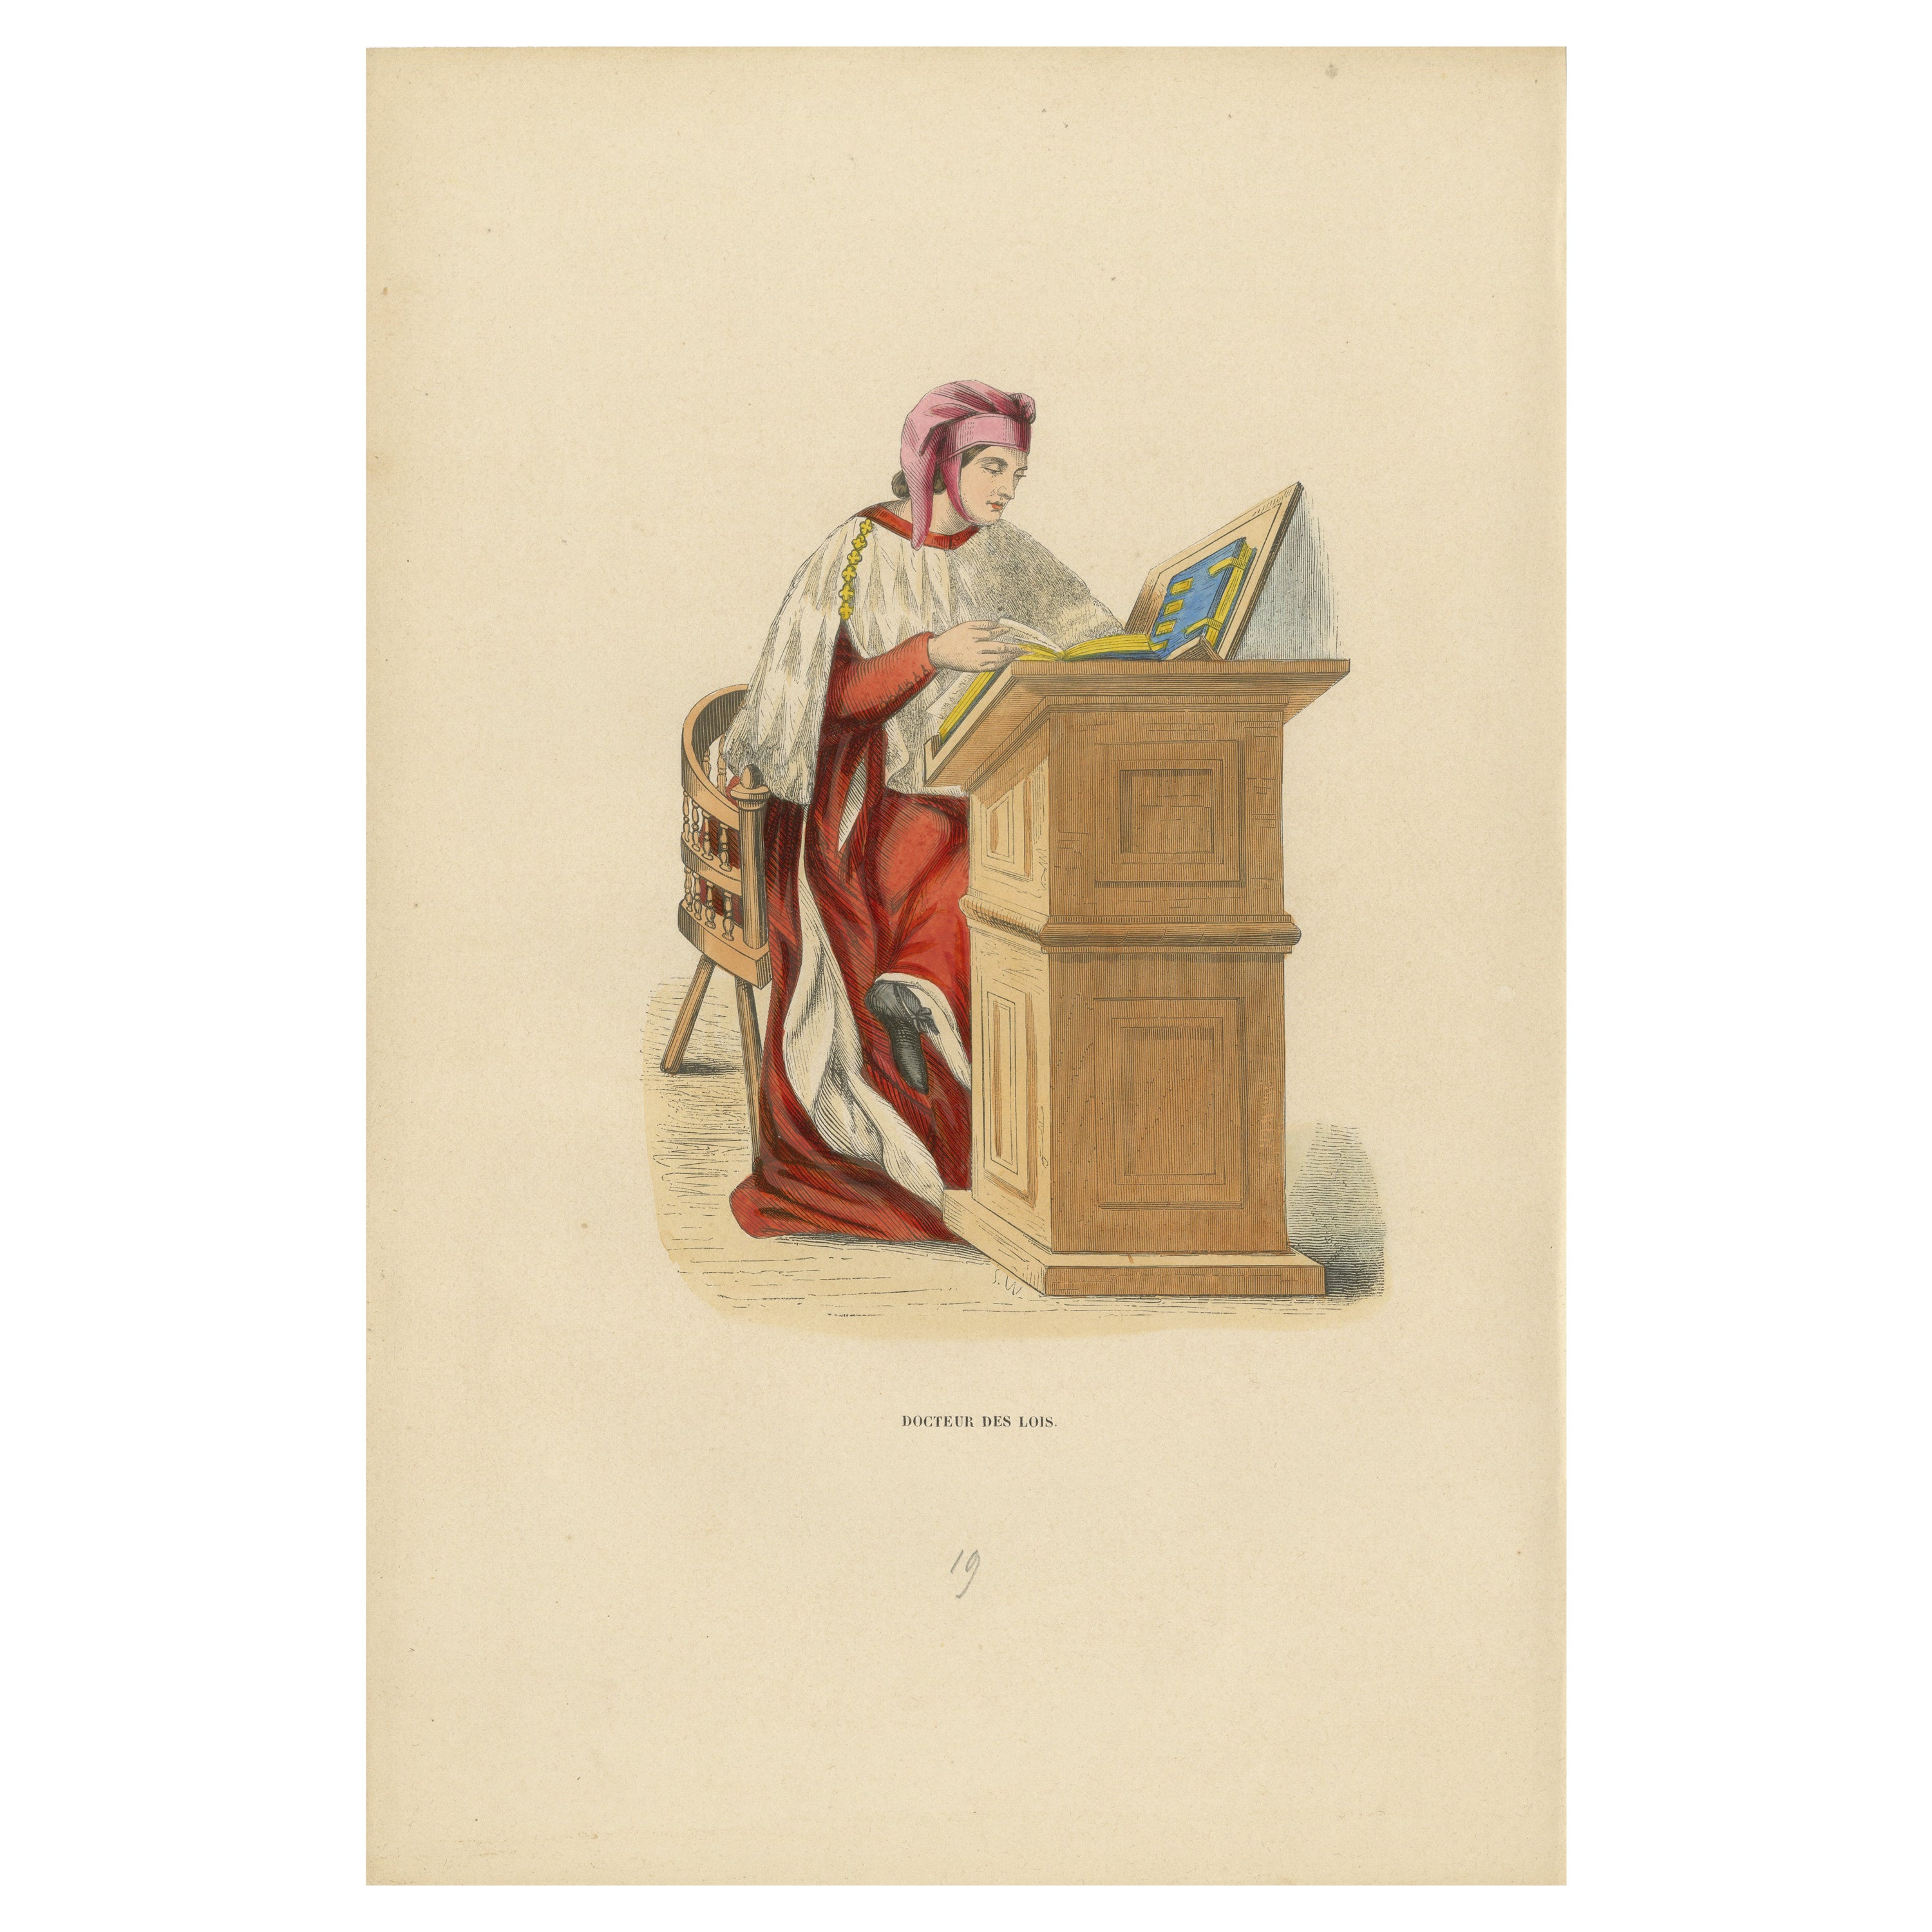 The Scholar of the Codex: Ein mittelalterlicher Jurist im Studium, 1847